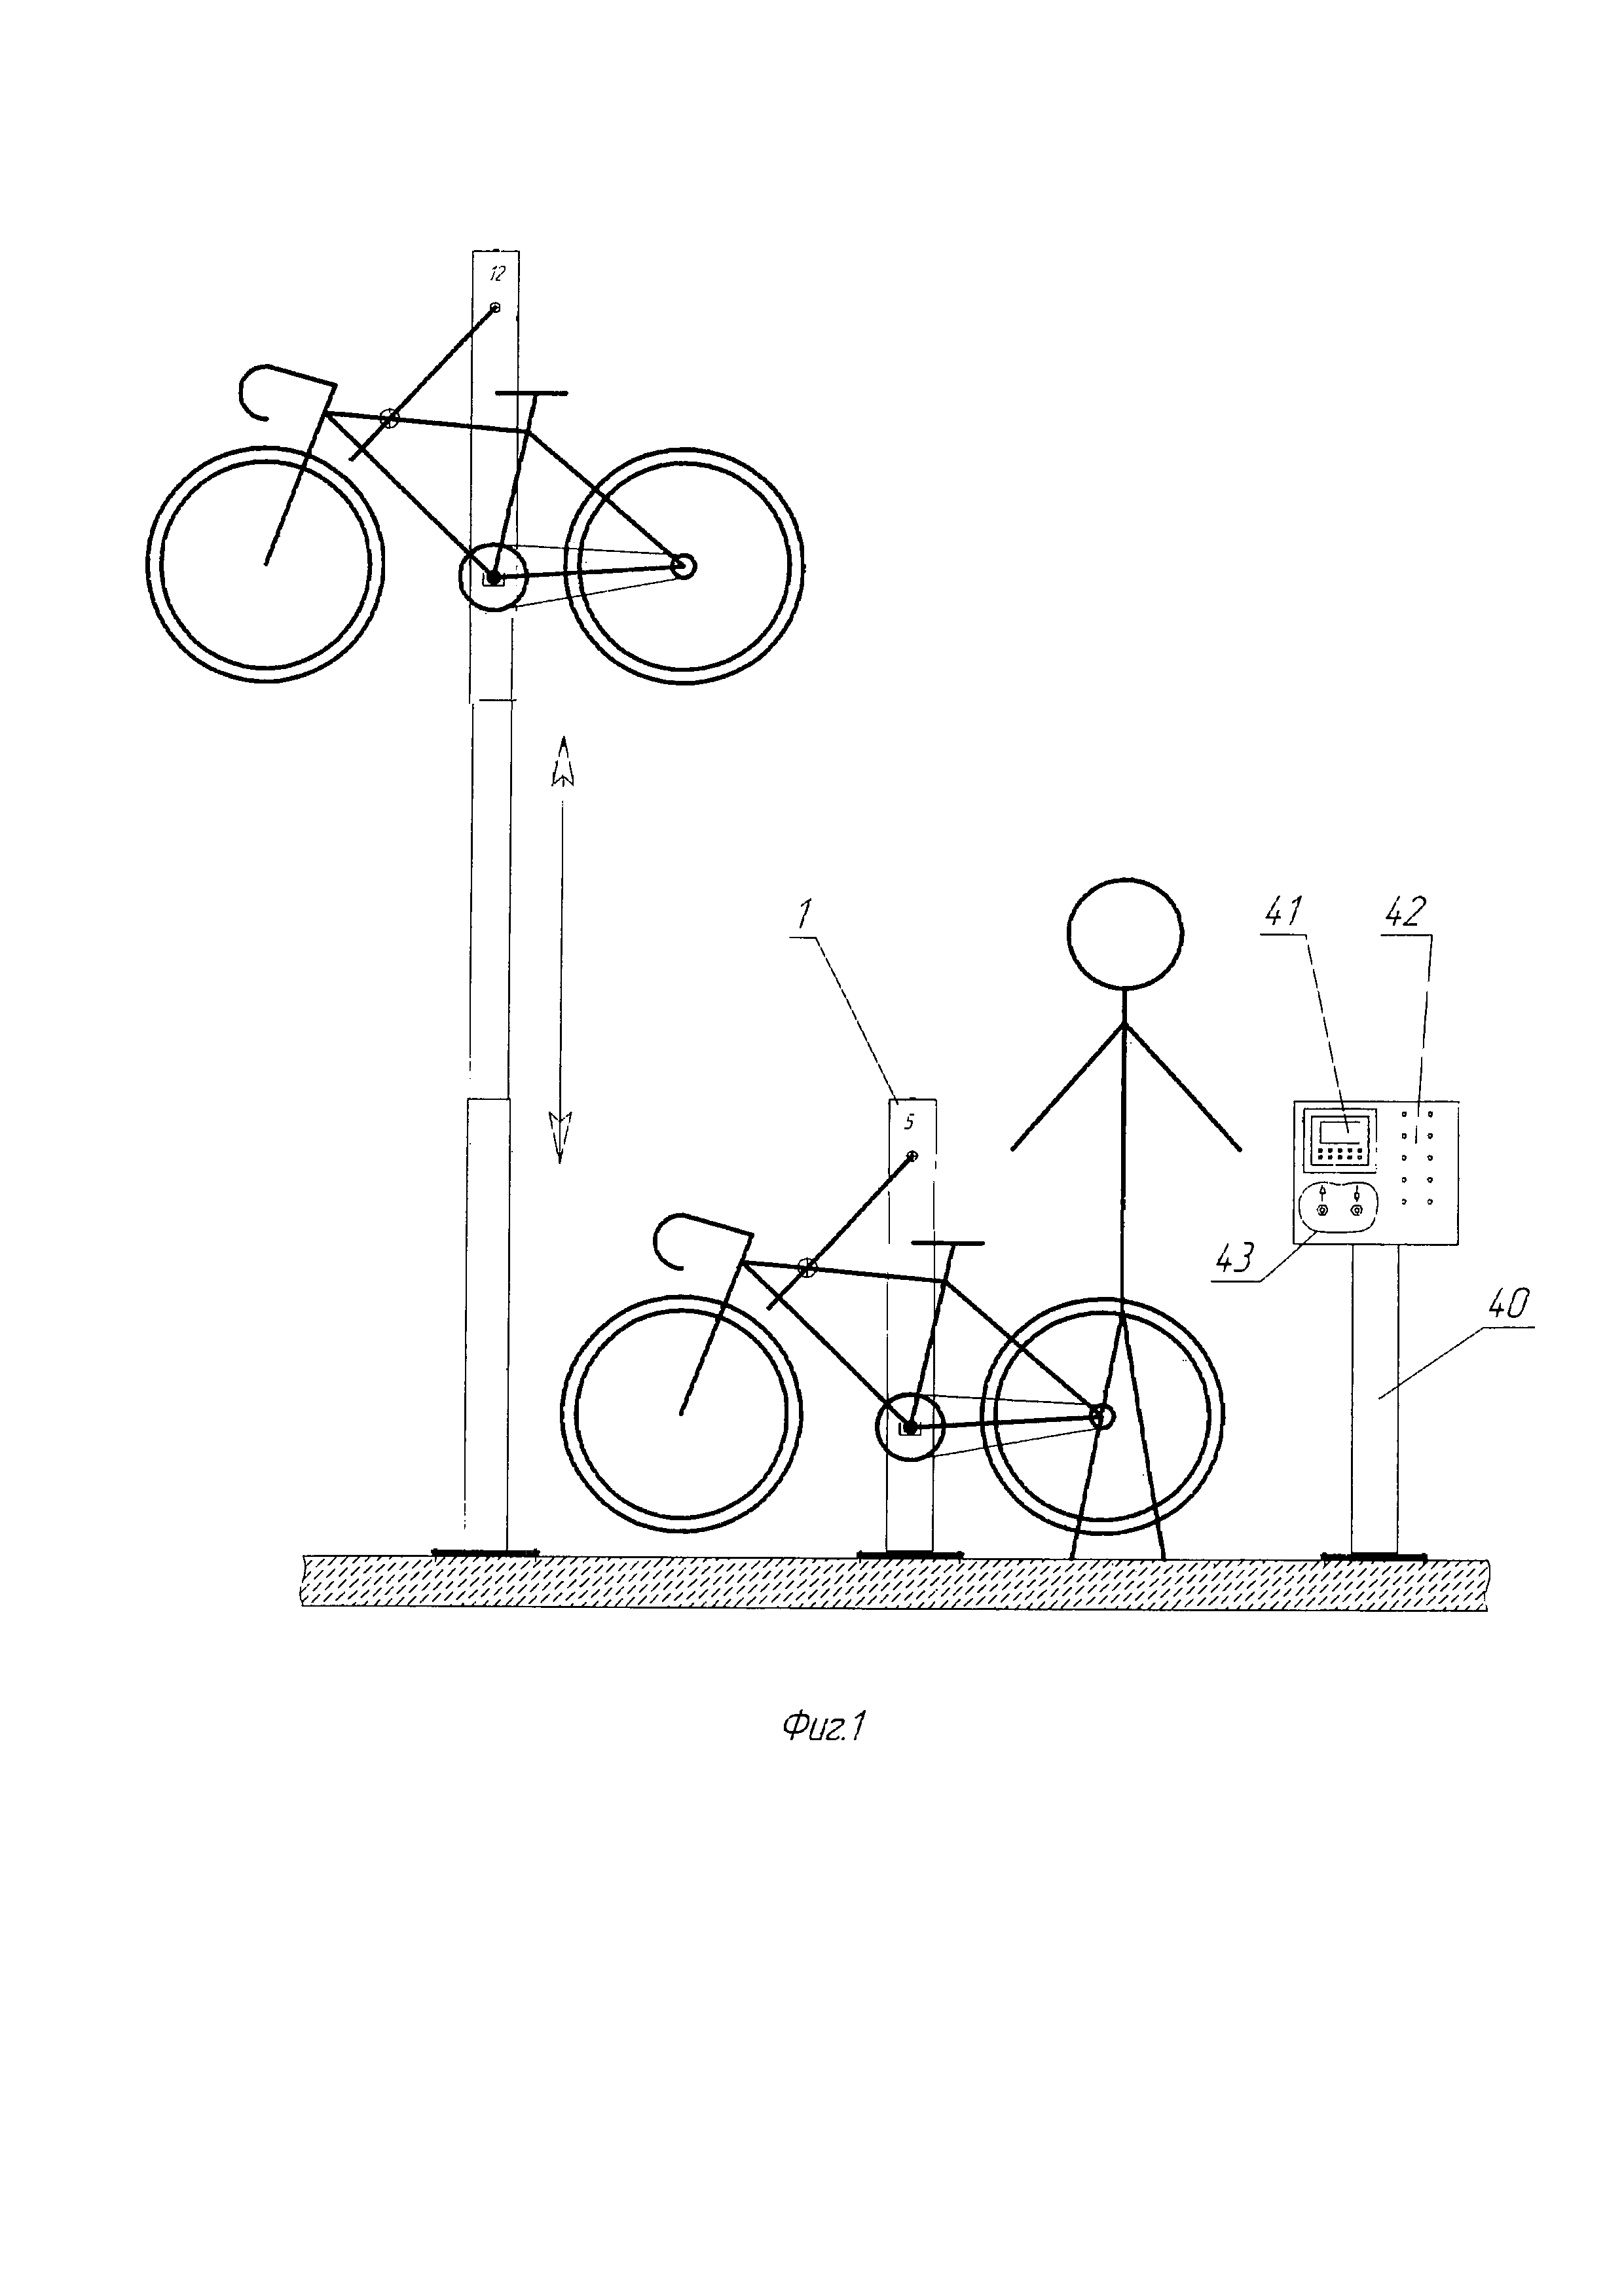 Велосипедная парковка (варианты) и устройство её консервации (варианты)